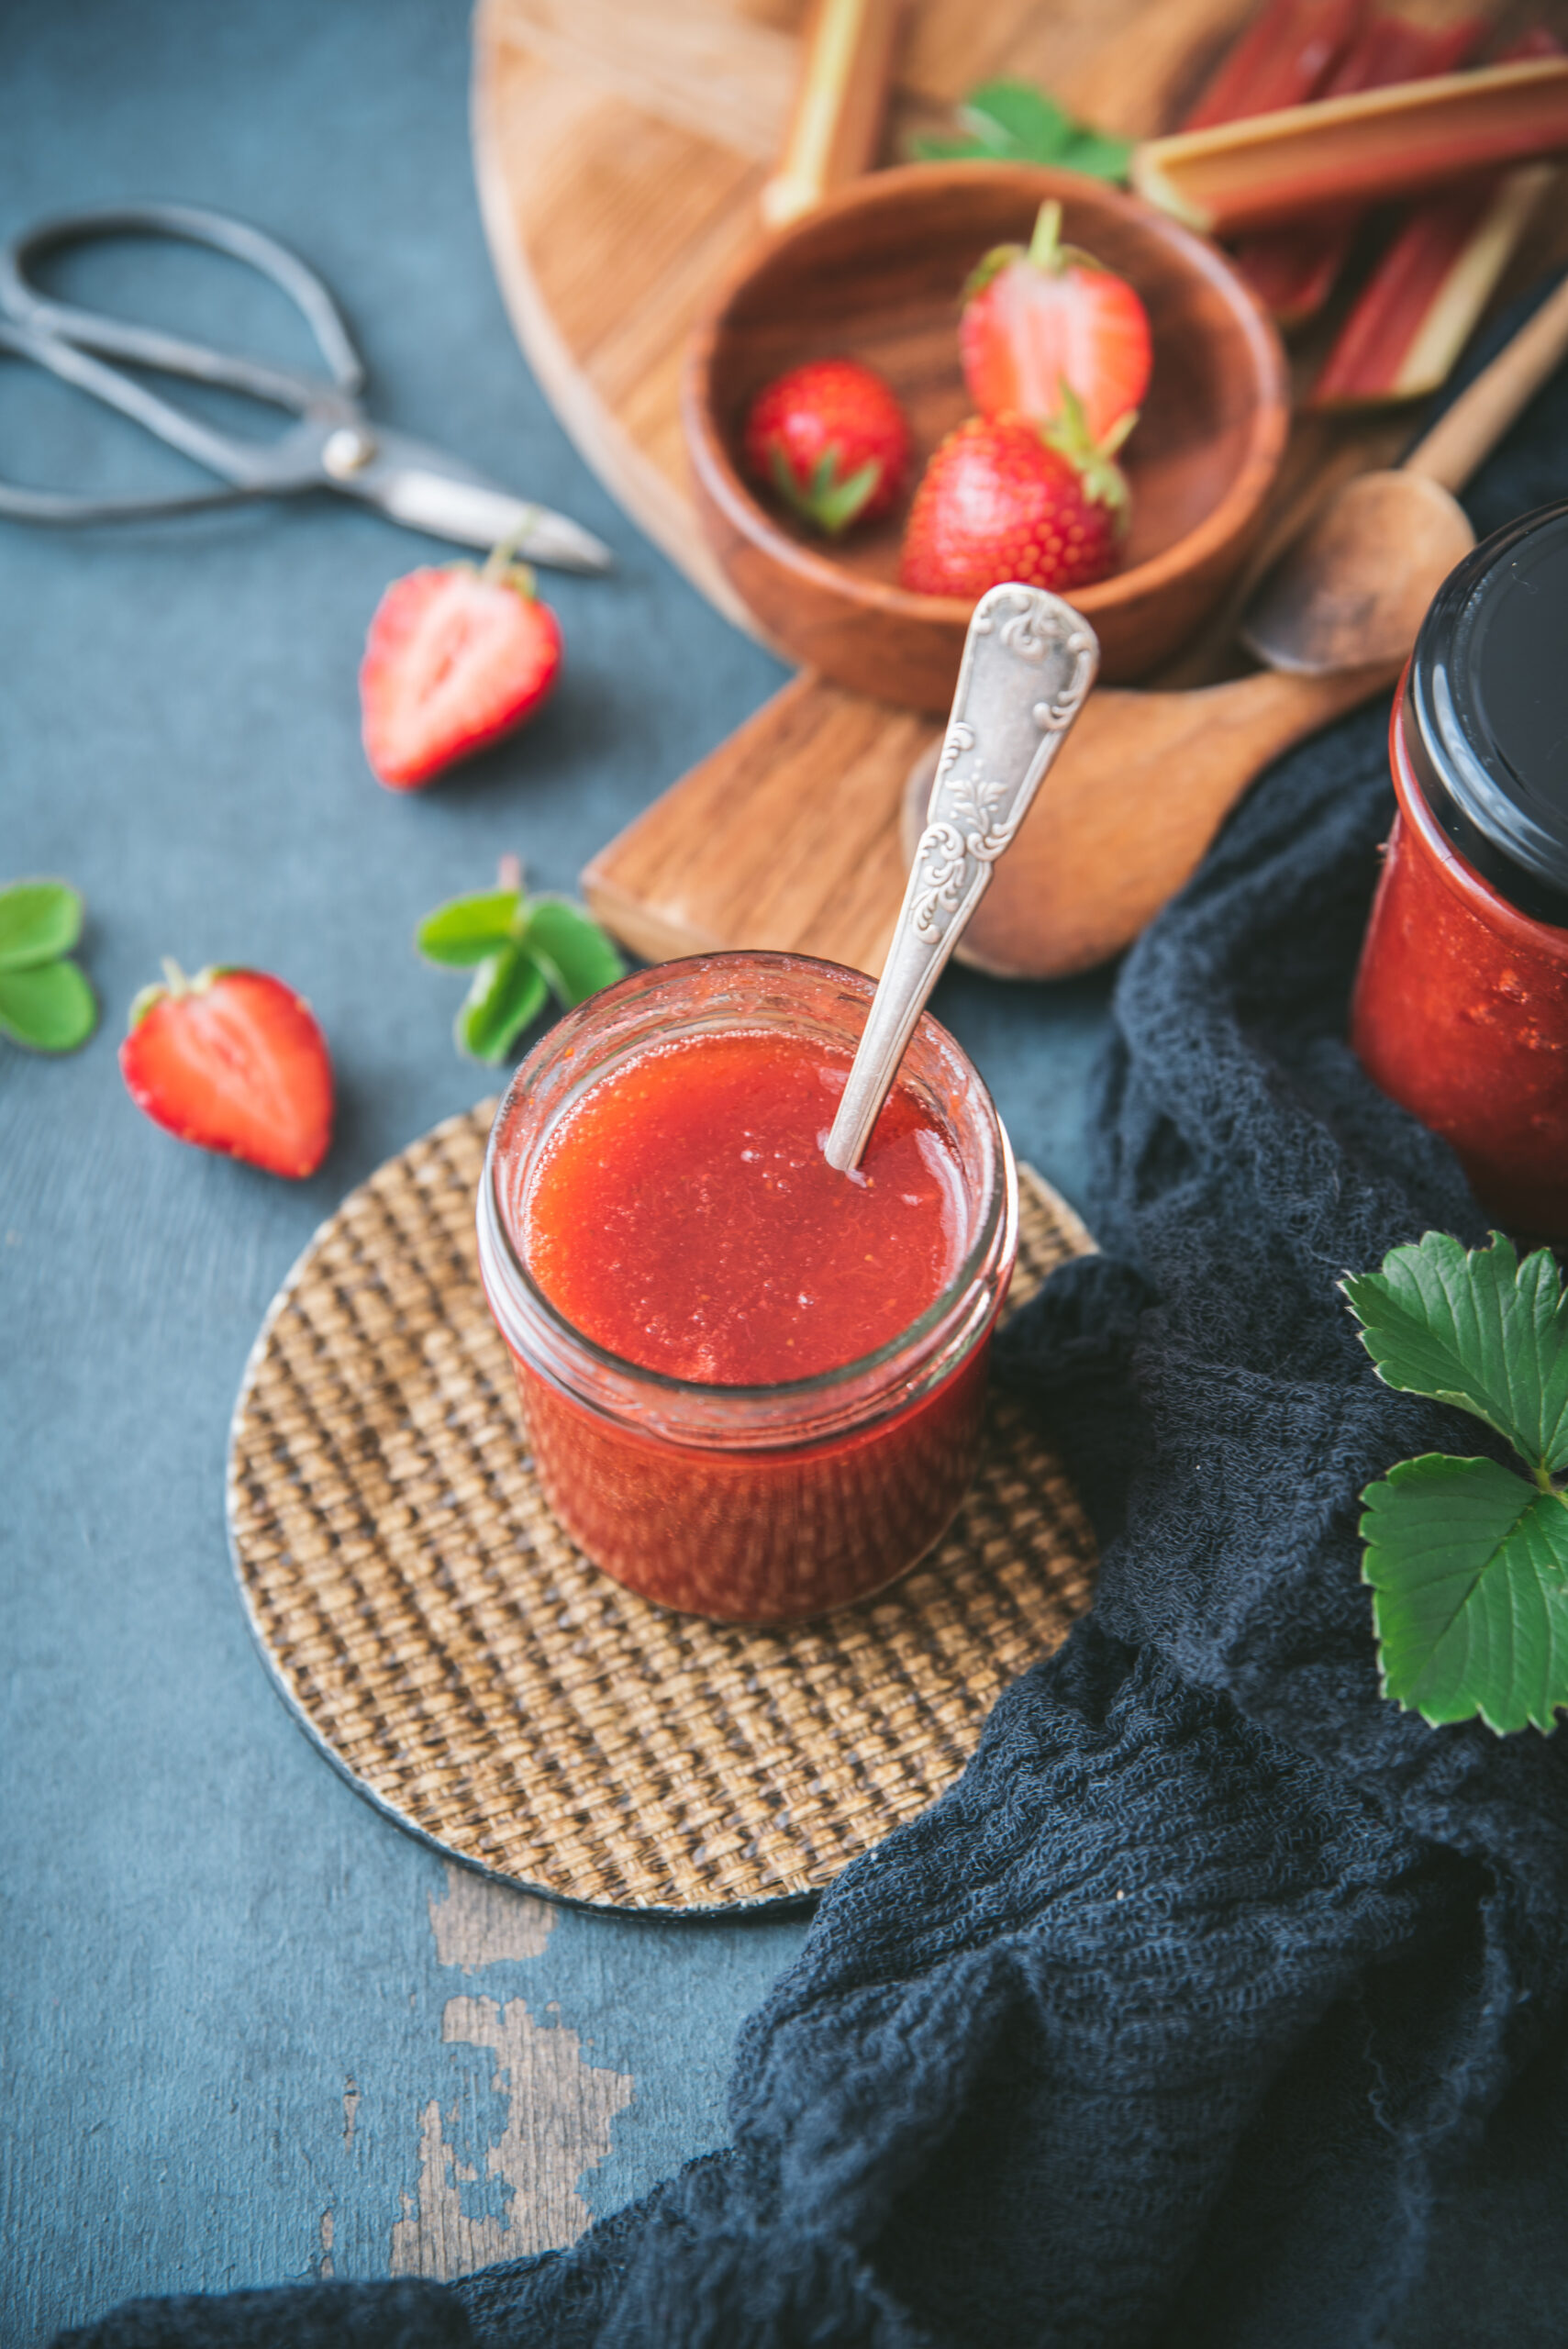 Strawberry Rhubarb Jam Homemade Recipe